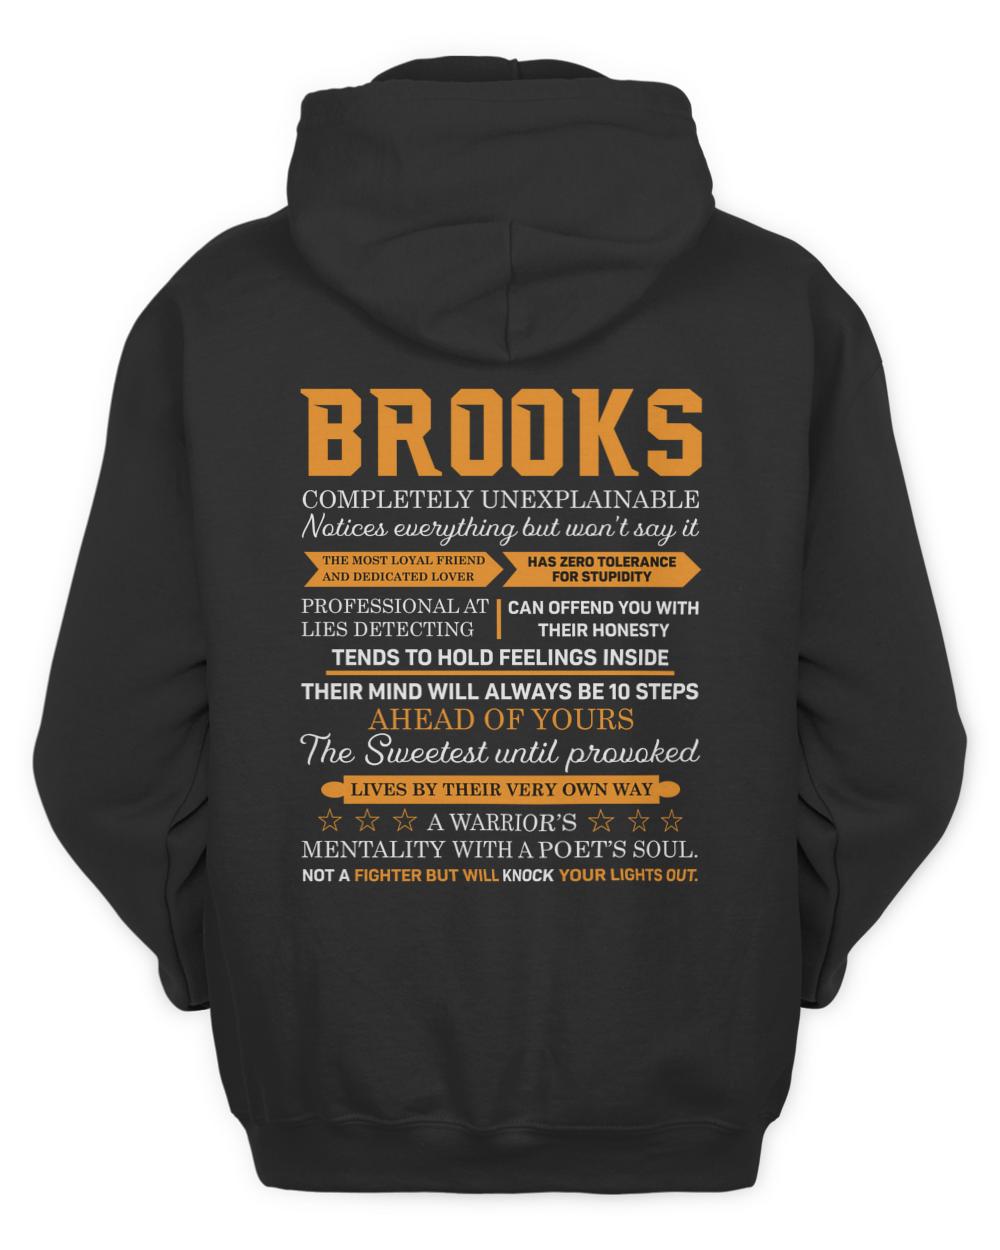 BROOKS-13K-N1-01